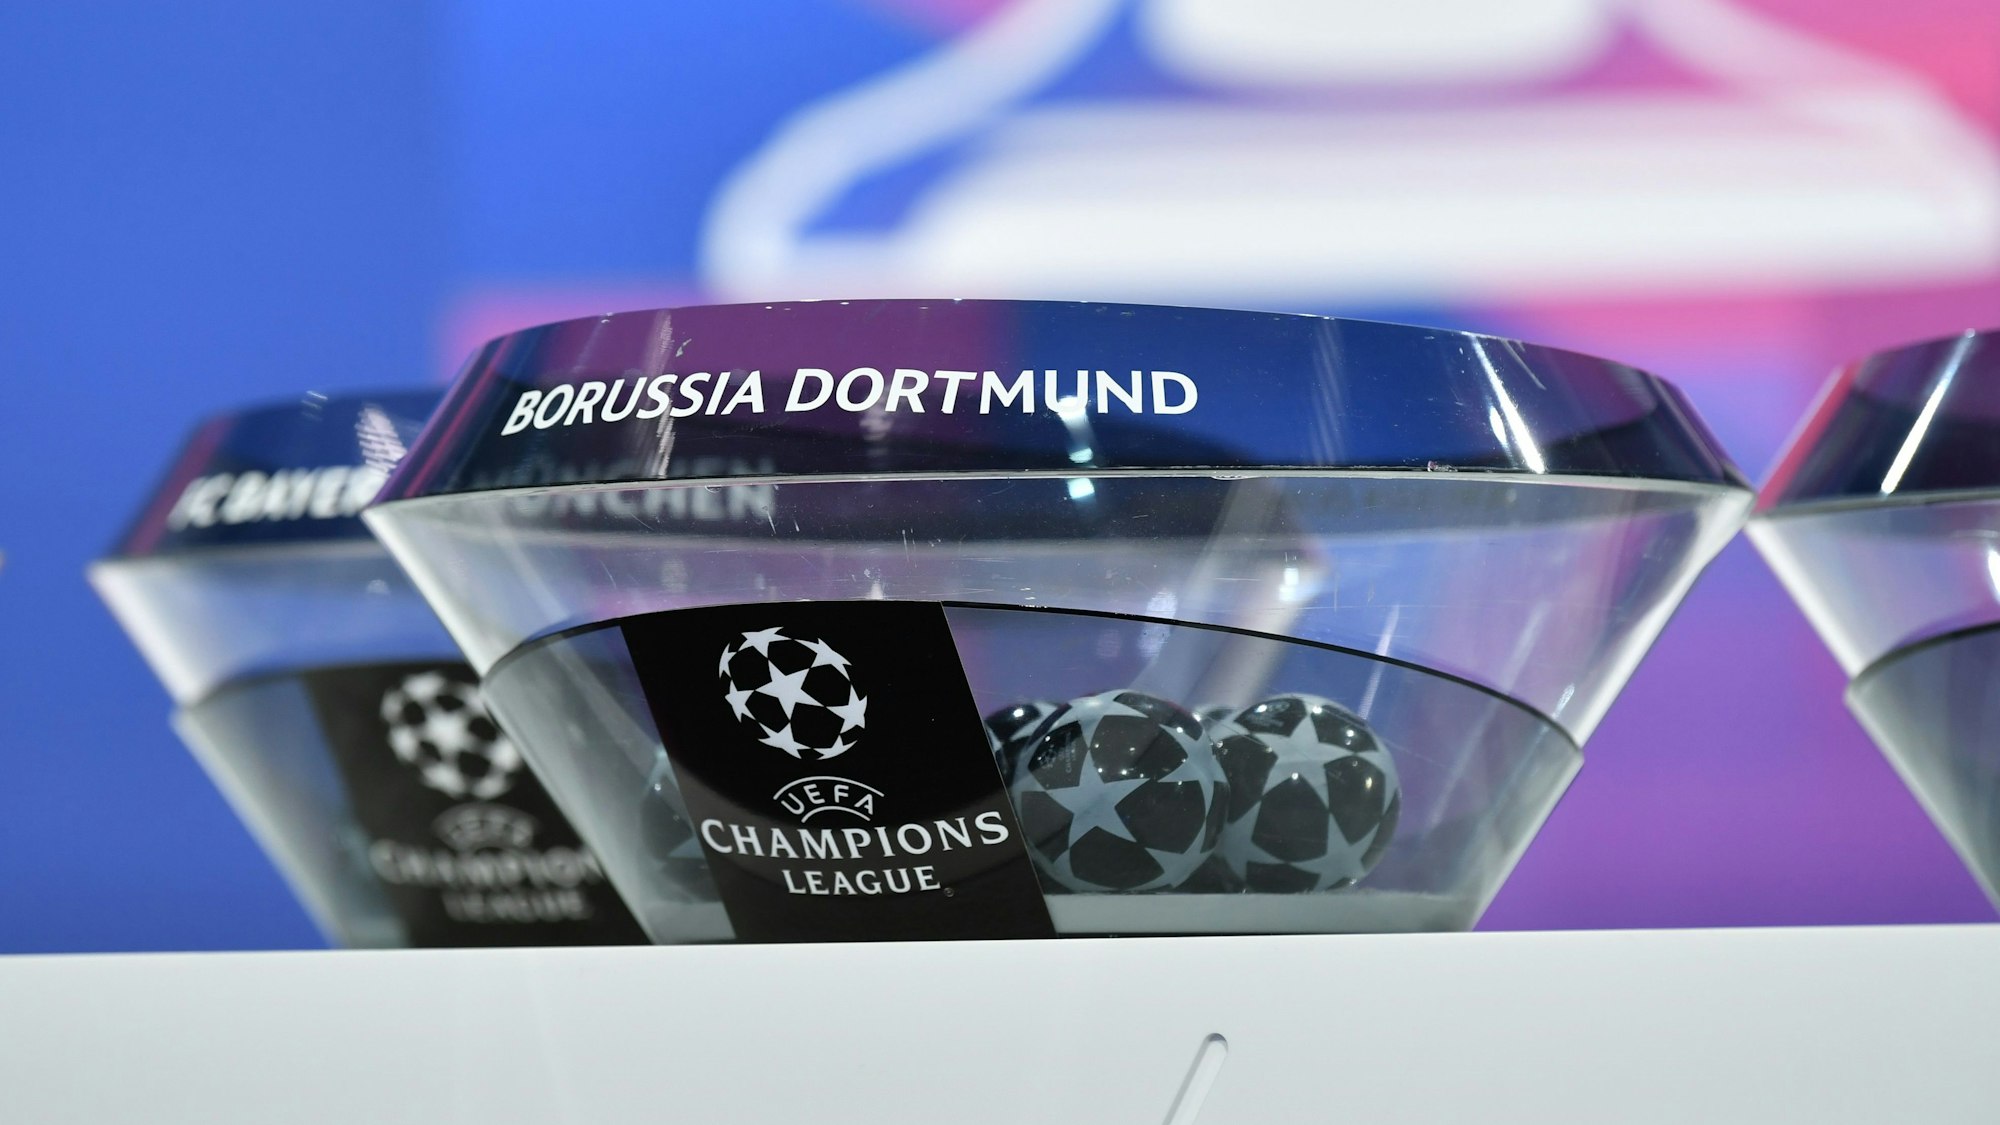 Lostöpfe mit einigen Loskugeln stehen für die Auslosung der Champions League bereit